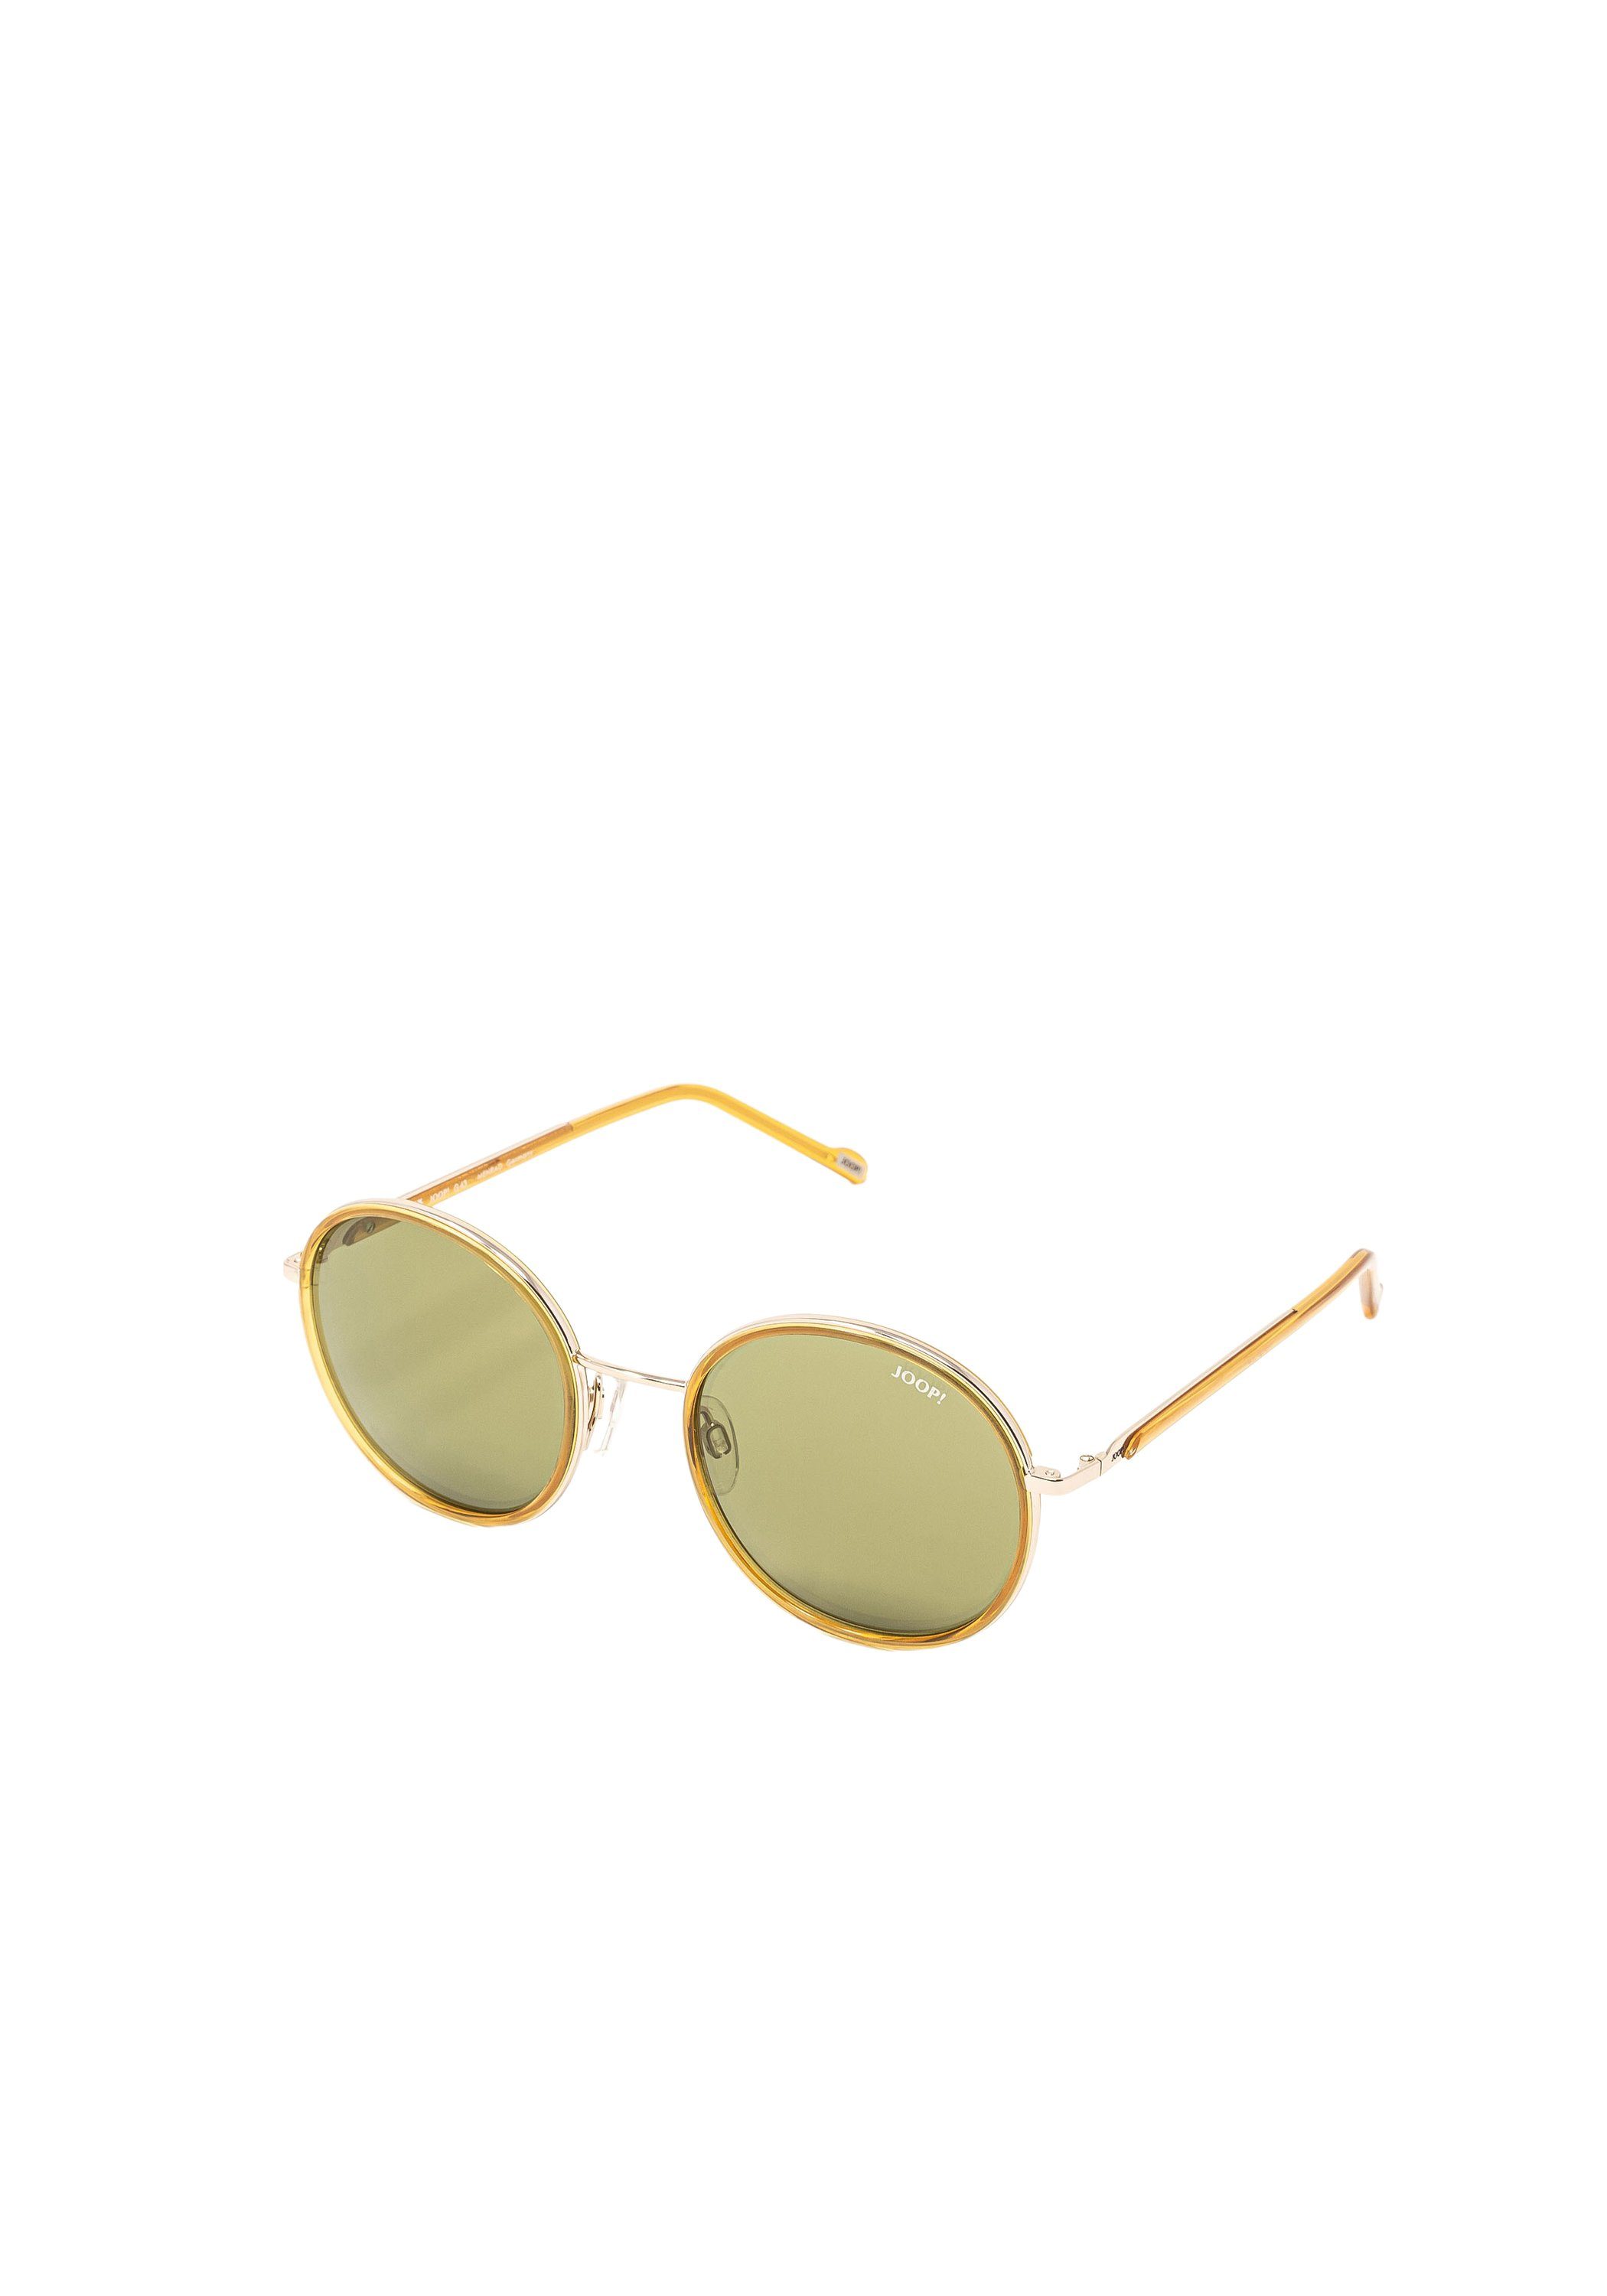 Joop! Sonnenbrille Sonnenbrille 08_7390, QUALITÄT: wertige, lifestyle  Marken-Sonnenbrille online kaufen | OTTO